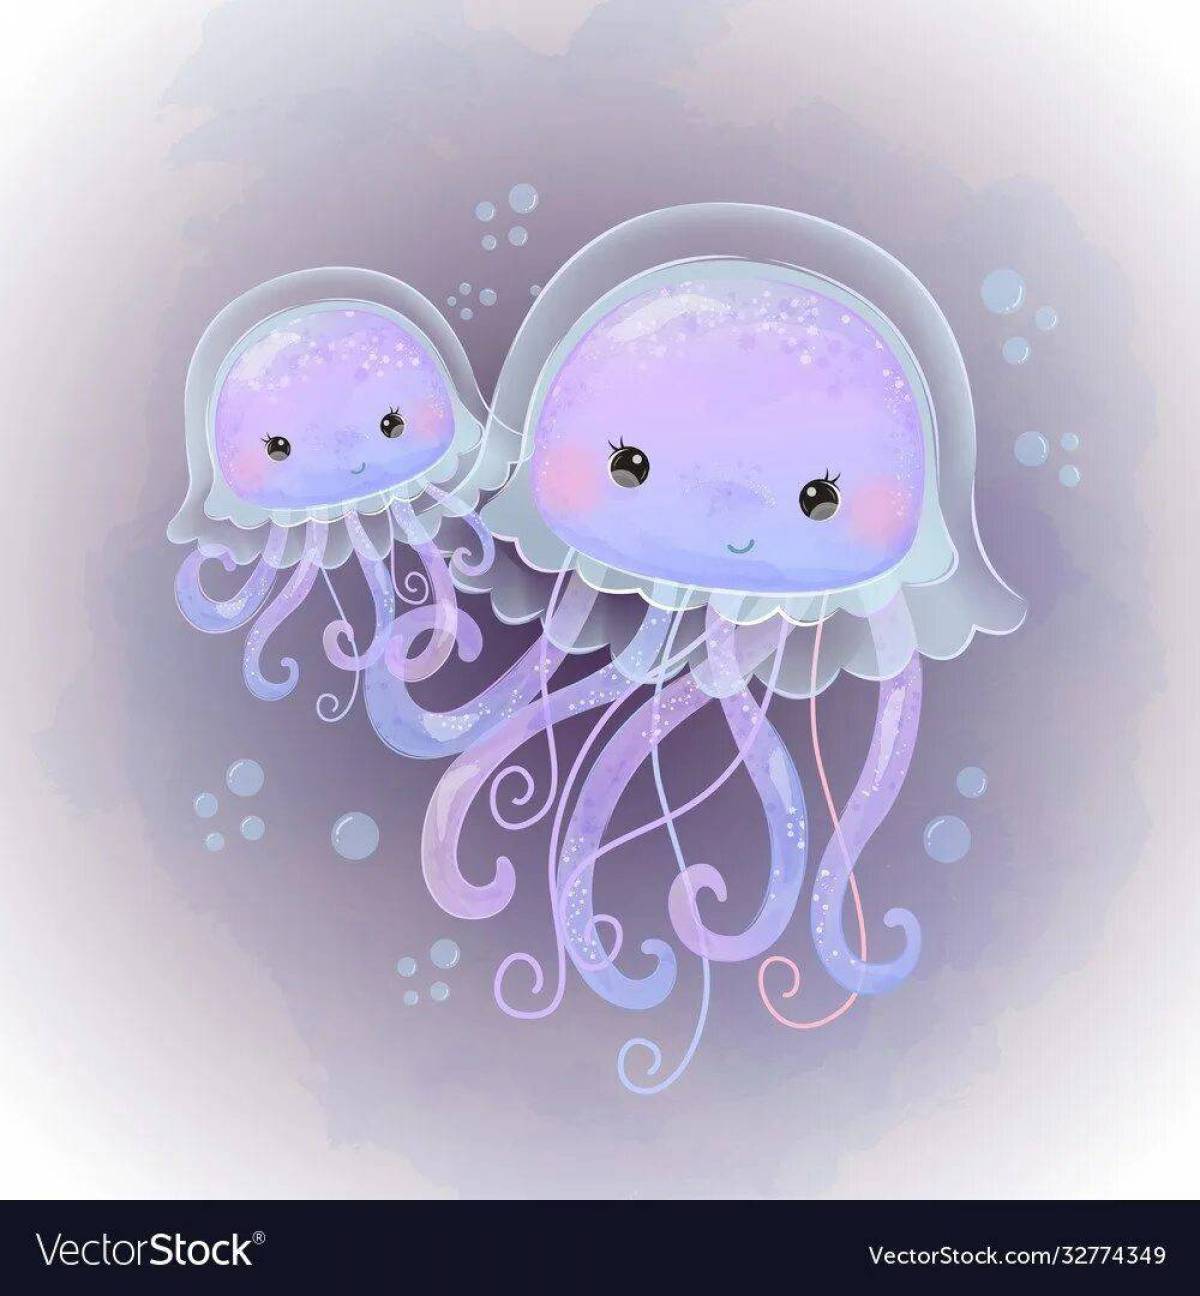 Медуза для детей #11